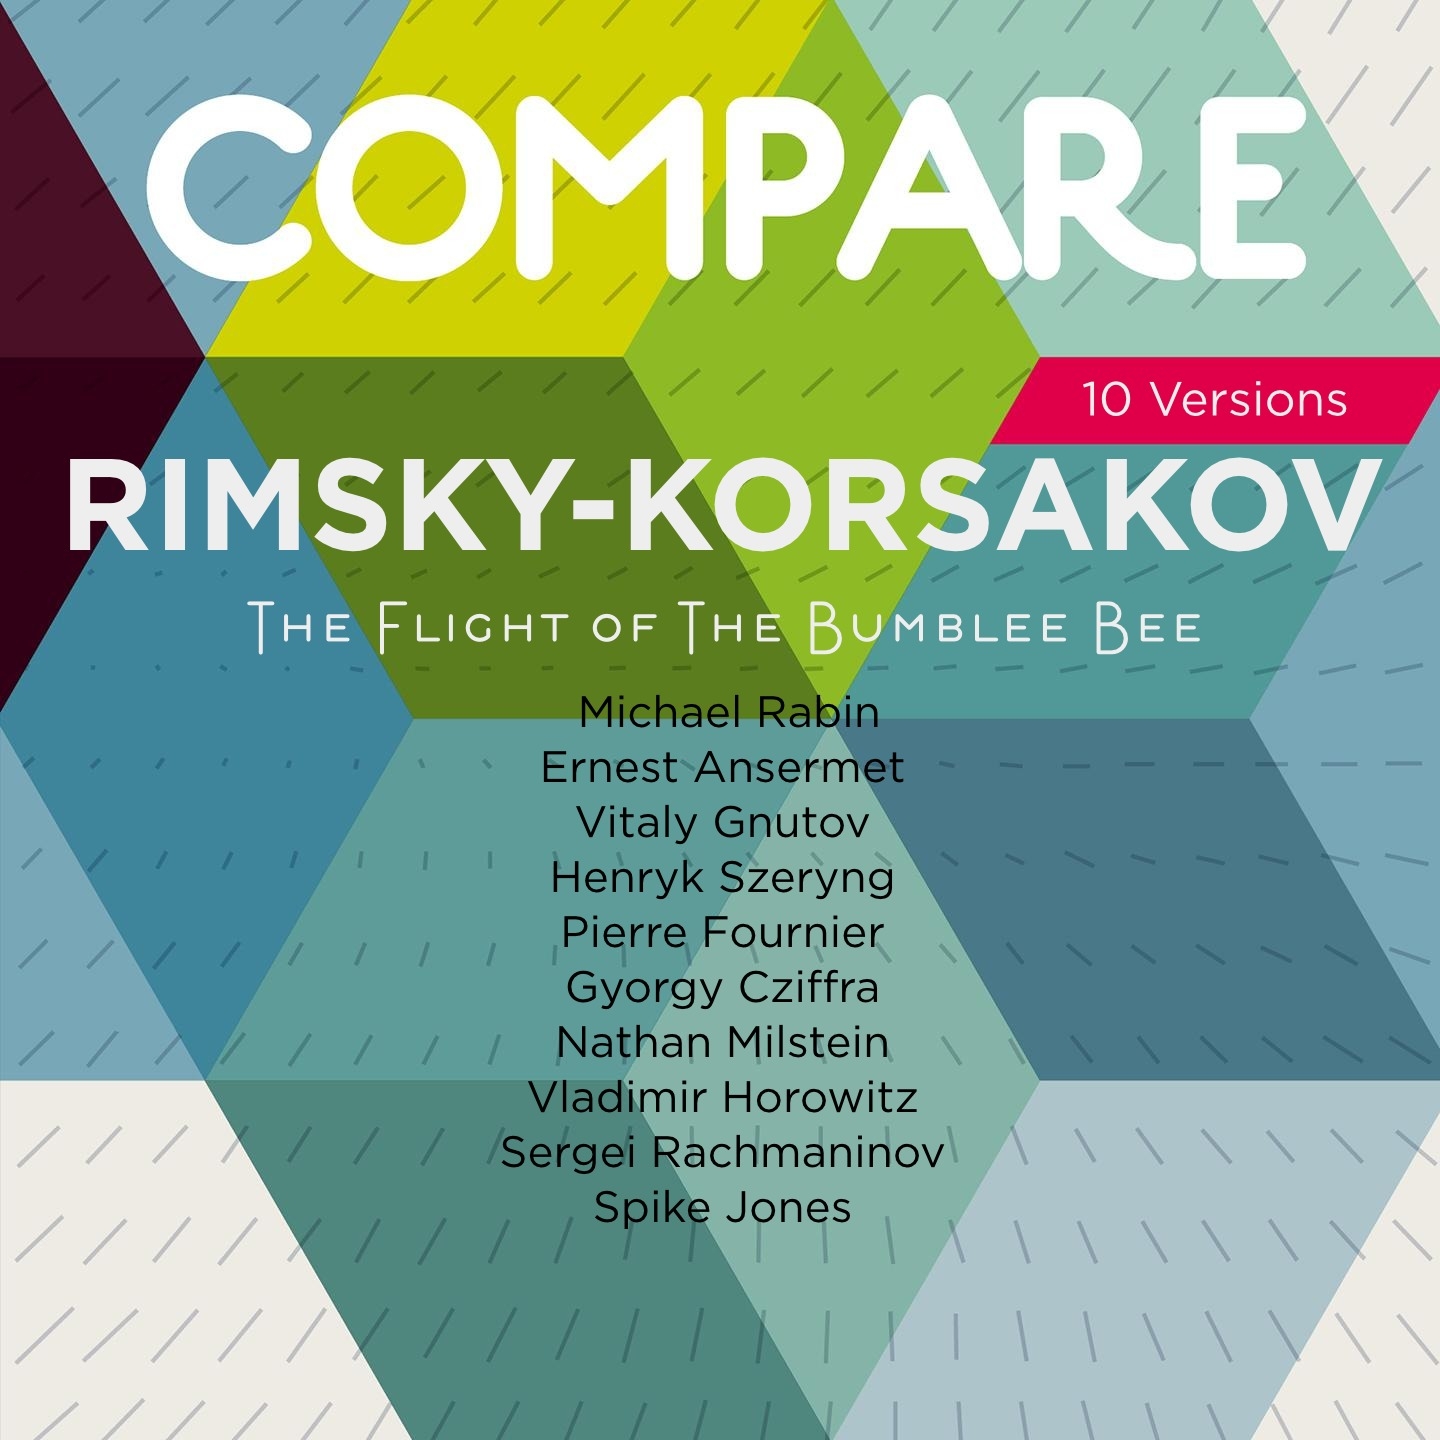 Rimsky-Korsakov: The Tale of Tsar Saltan, Flight of the Bumble-Bee, Rabin vs. Ansermet vs. Gnutov vs. Szeryng vs. Fournier vs. Cziffra vs. Milstein vs. Horowitz vs. Rachmaninov vs. Jones